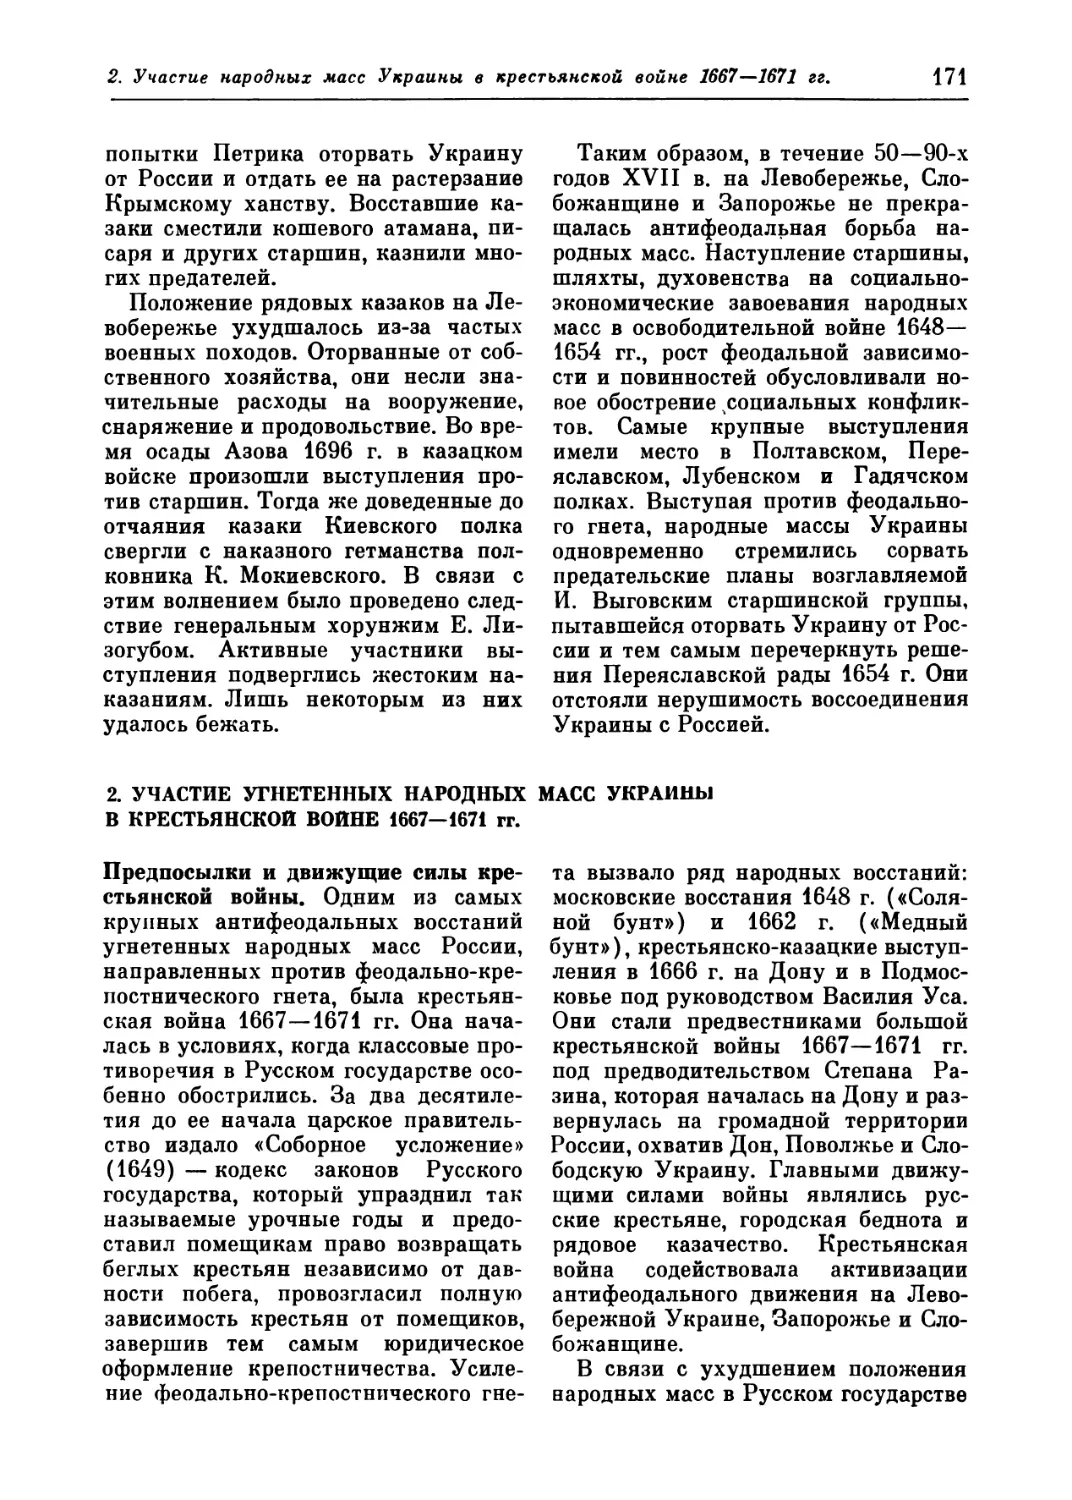 2. Участие угнетенных народных масс Украины в крестьянской войне 1667—1671 гг